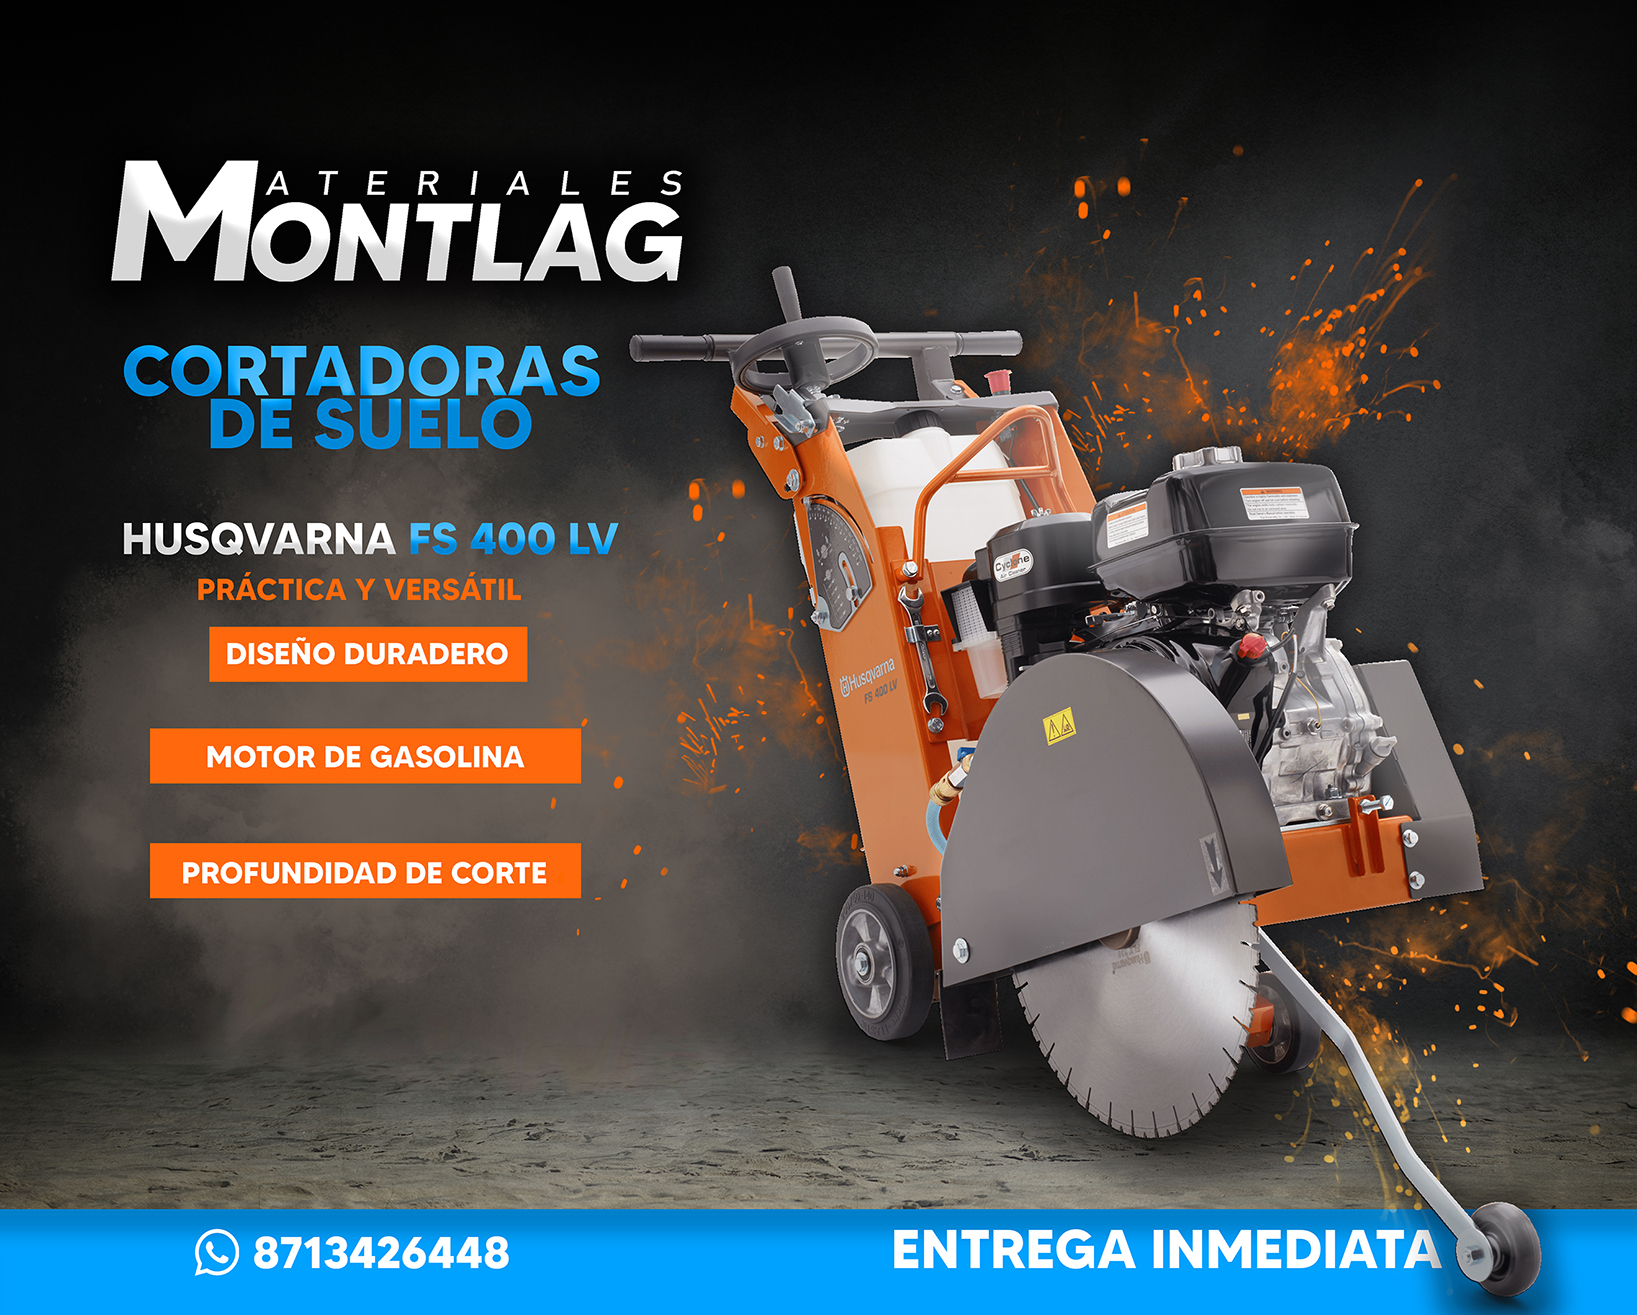 Materiales Montlag - CORTADORA  DE SUELO  FS400 LV